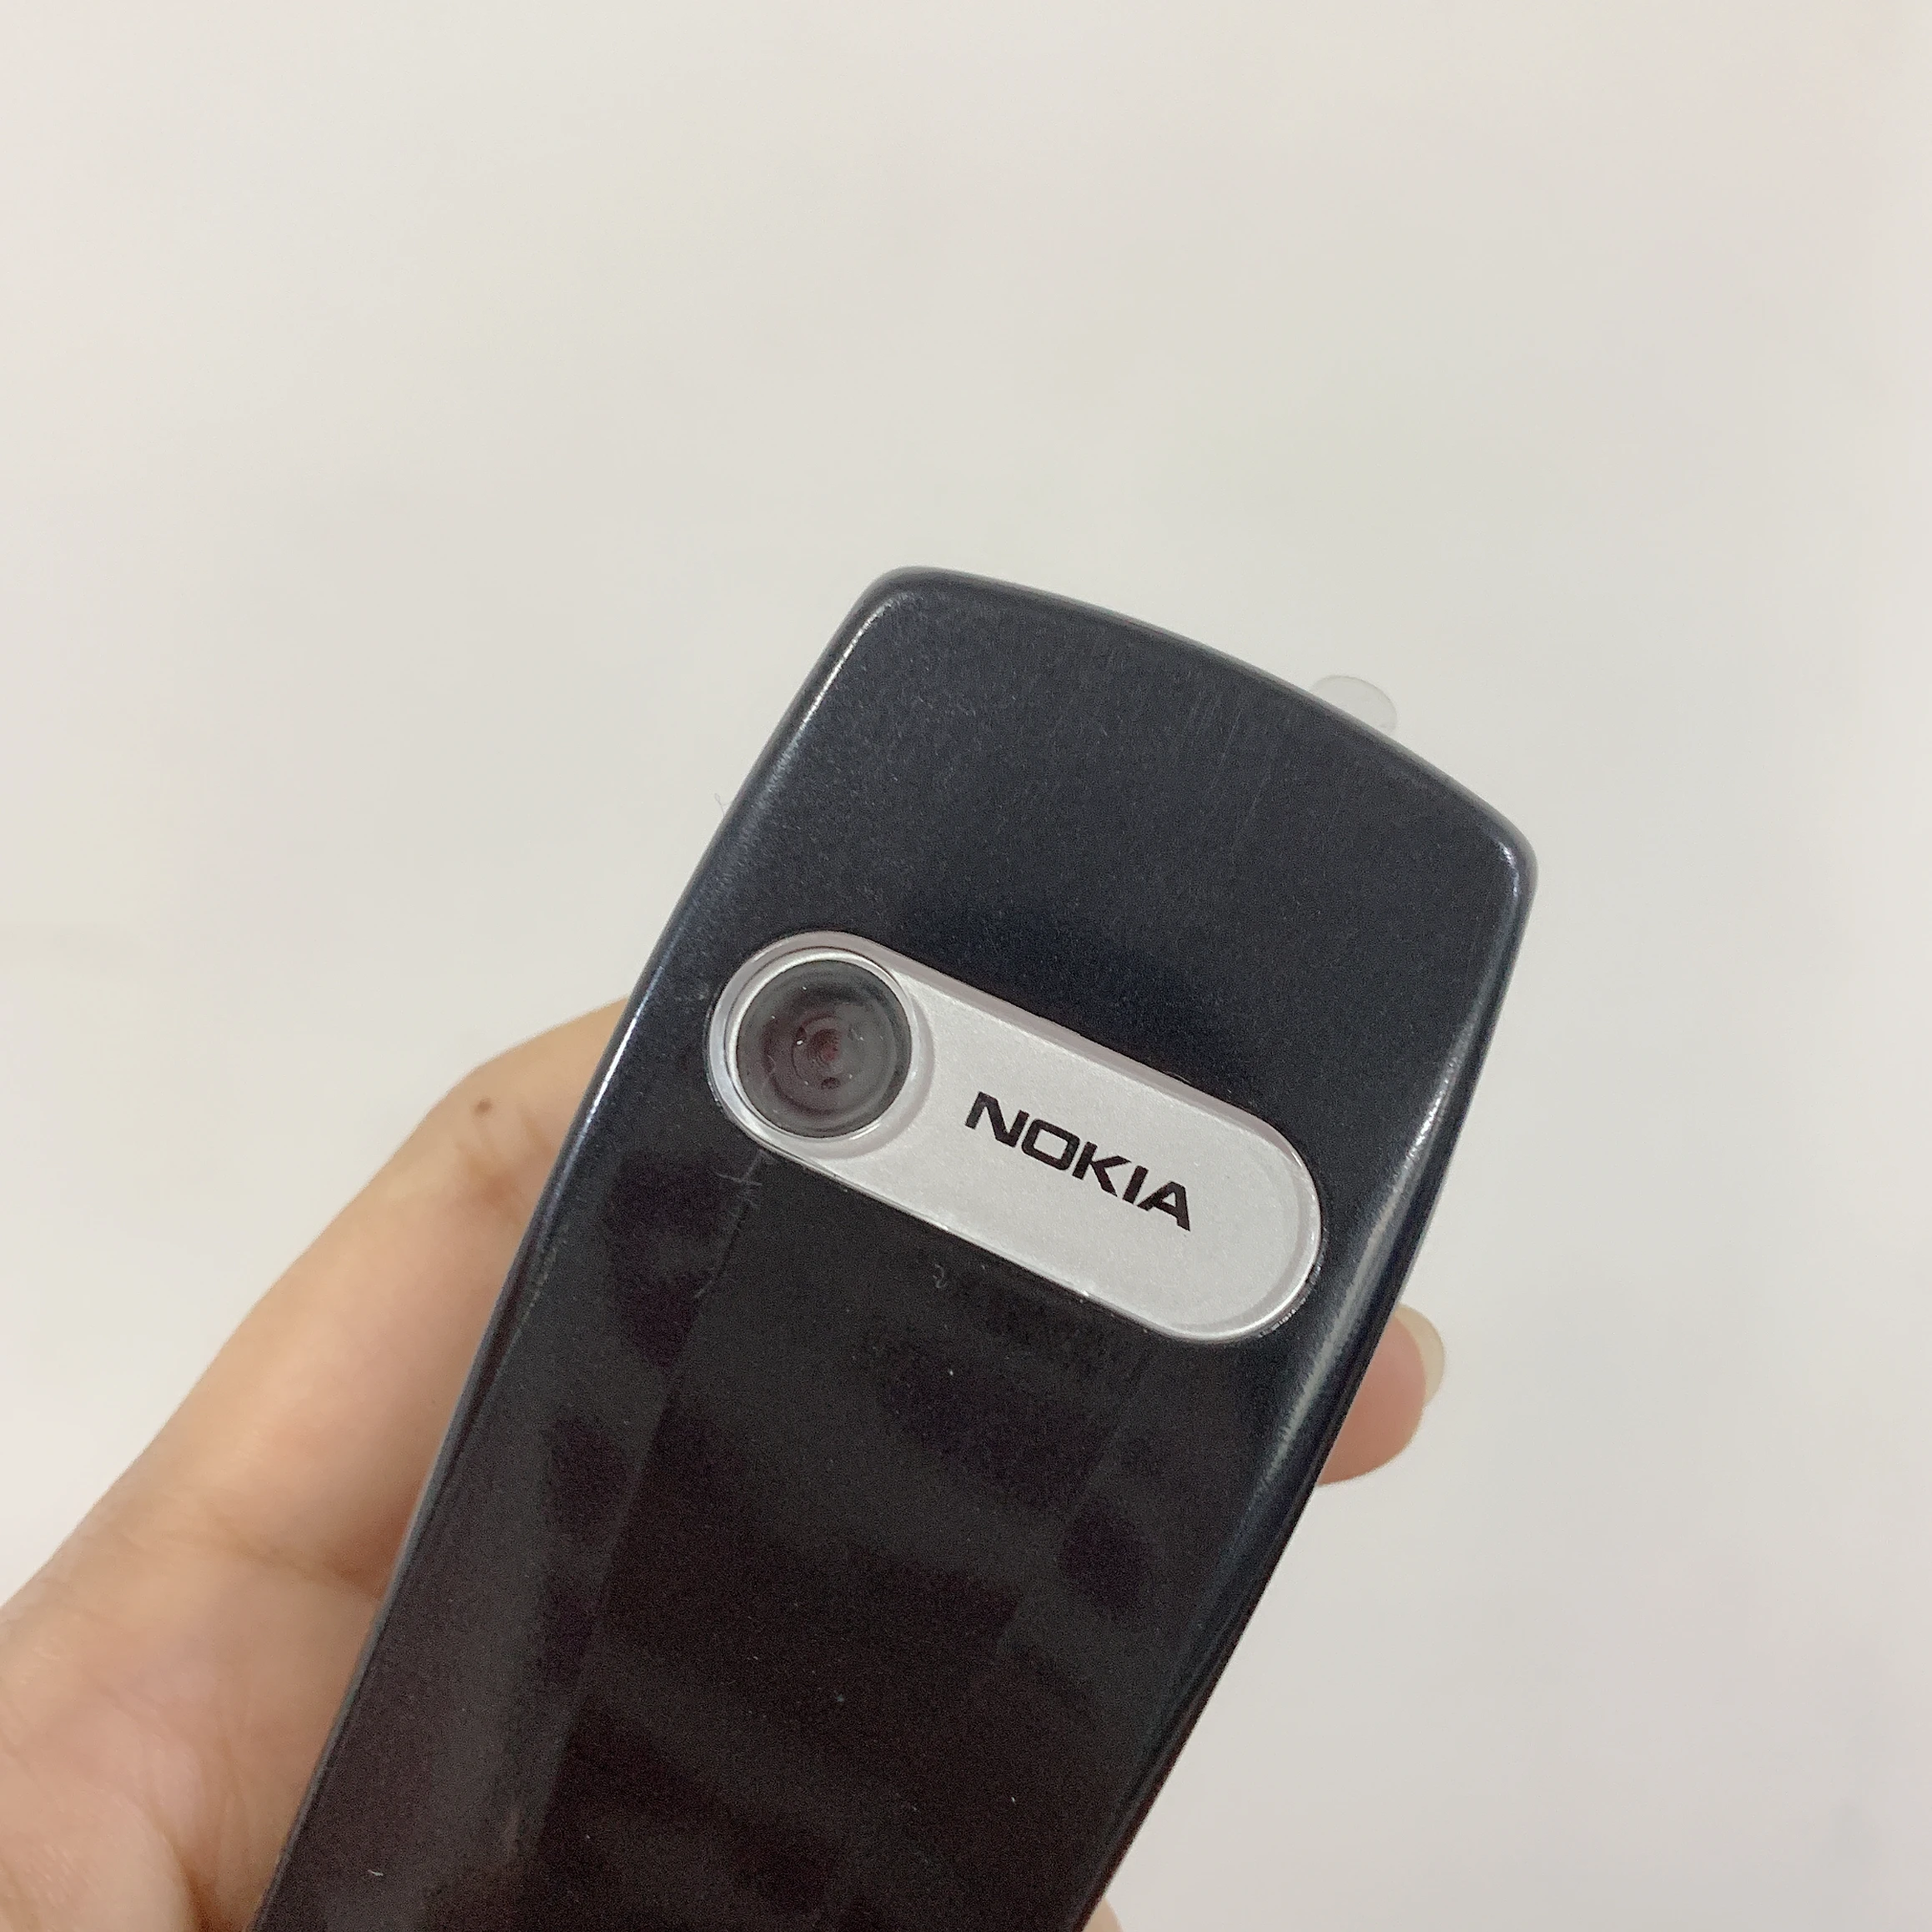 nokia 6610i refurbished original unlocked nokia 6610i unlocked gsm bar mobile phone suppport englishrussianarabic keyboard free global shipping